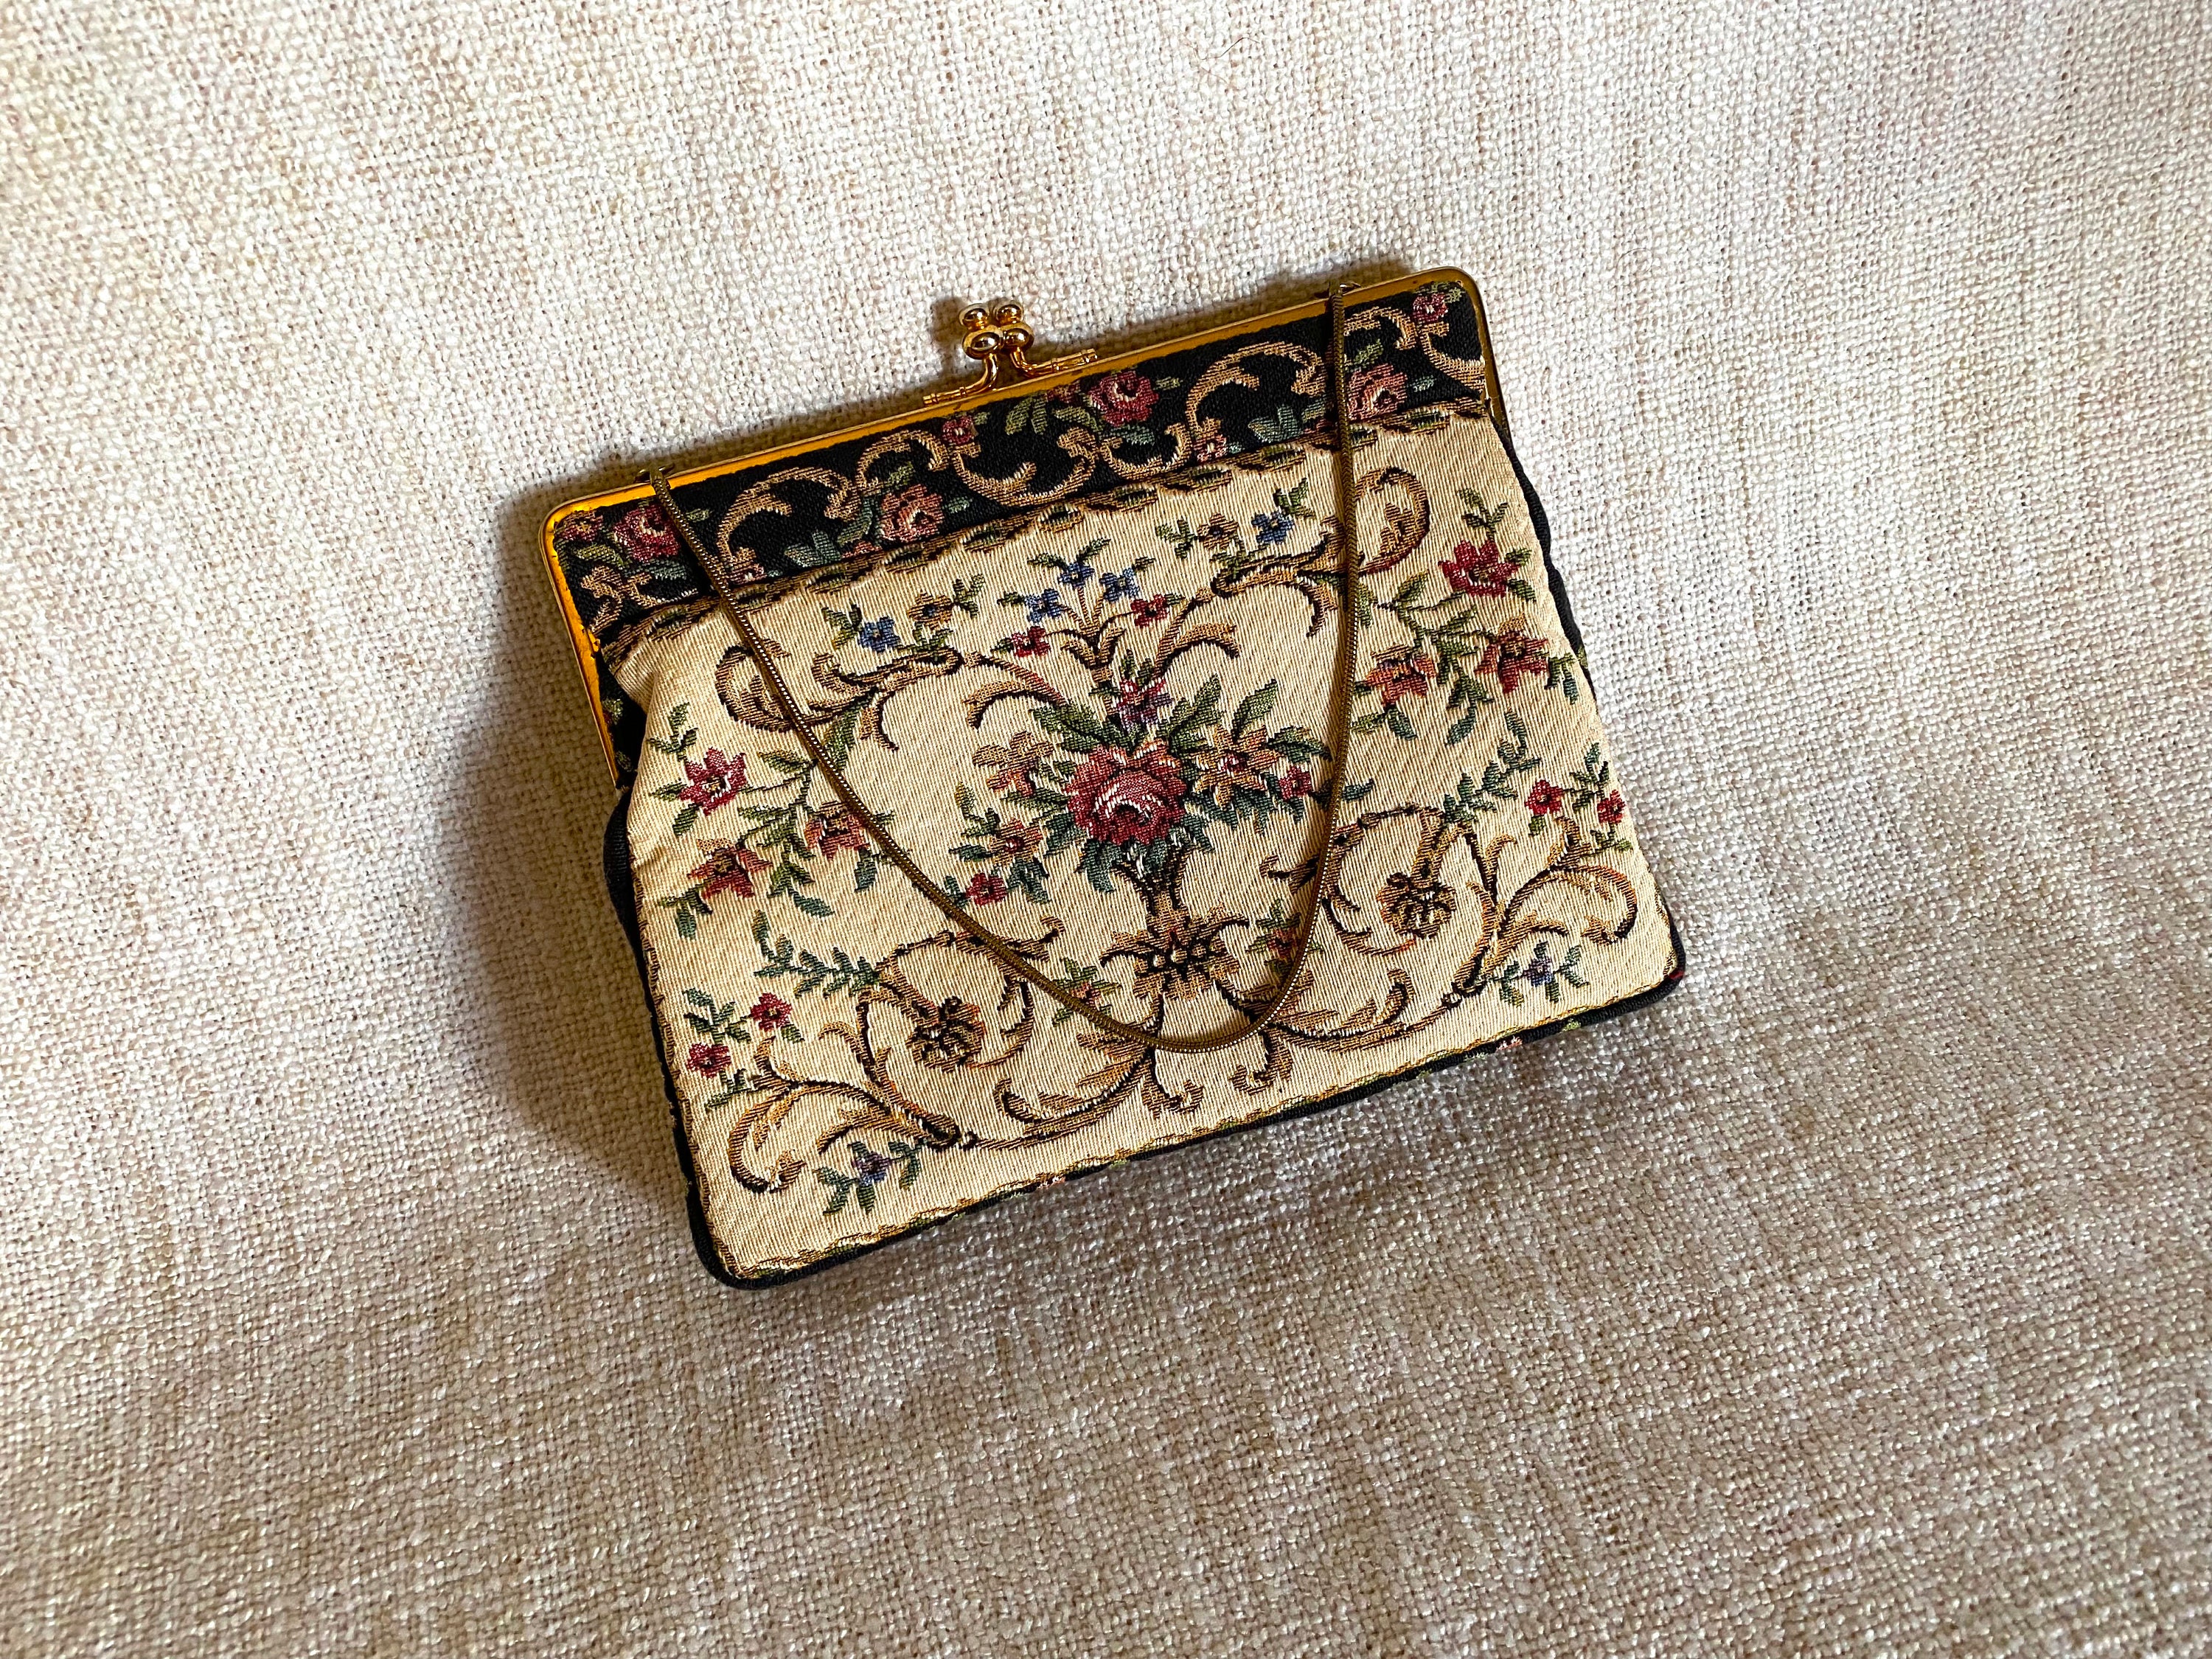 Japanese Vintage Clutch Bag, Red-crowned Crane Clutch, Indigo Clutch, Clutch  Purse, Handbag, Shoulder Bag Handcrafted - Etsy